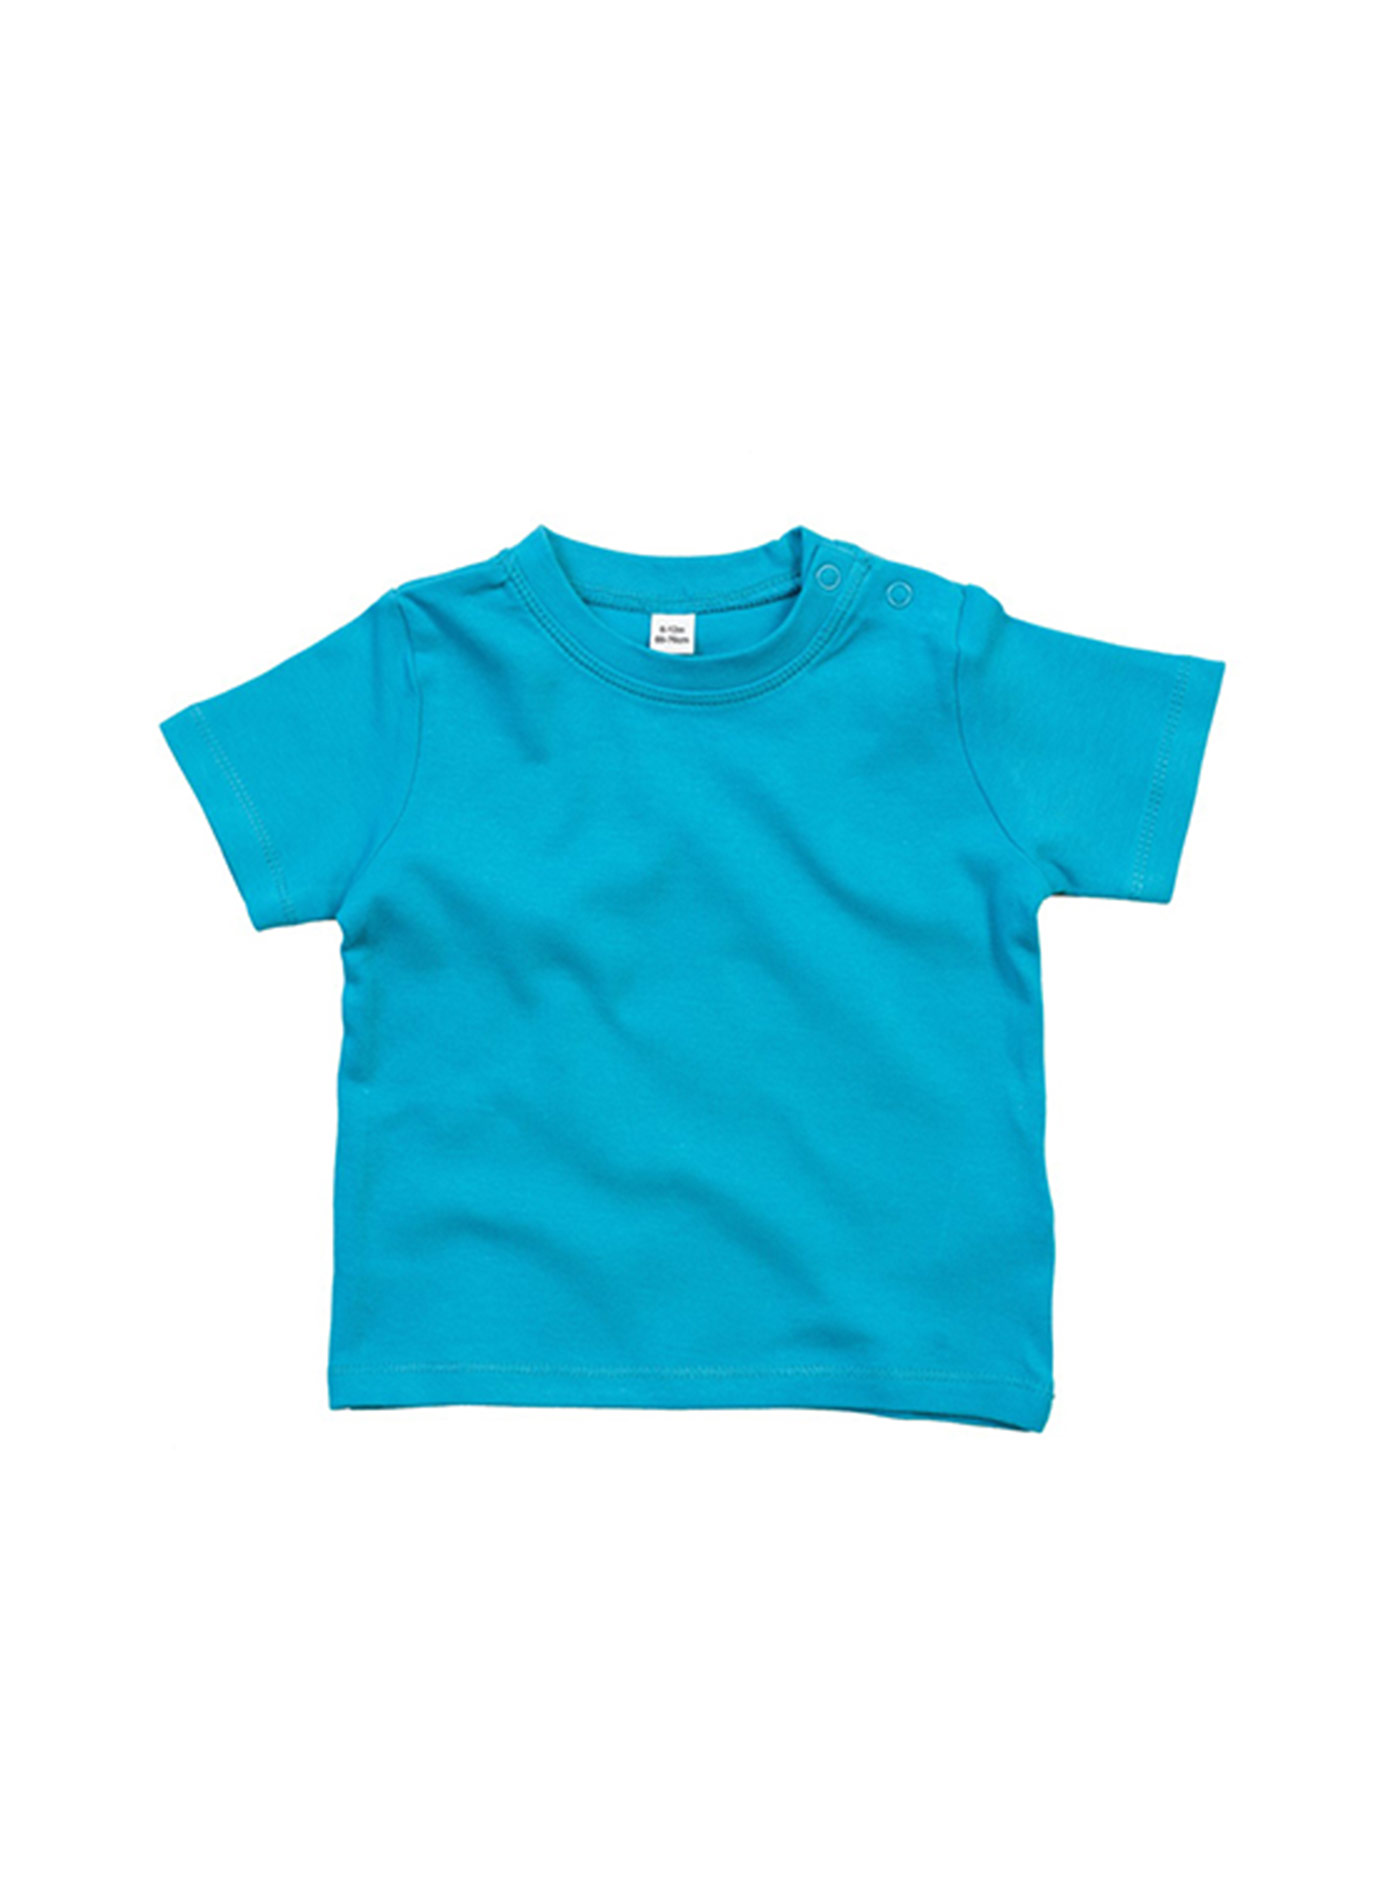 Dětské bavlněné tričko Babybugz - Blankytně modrá 18-24m